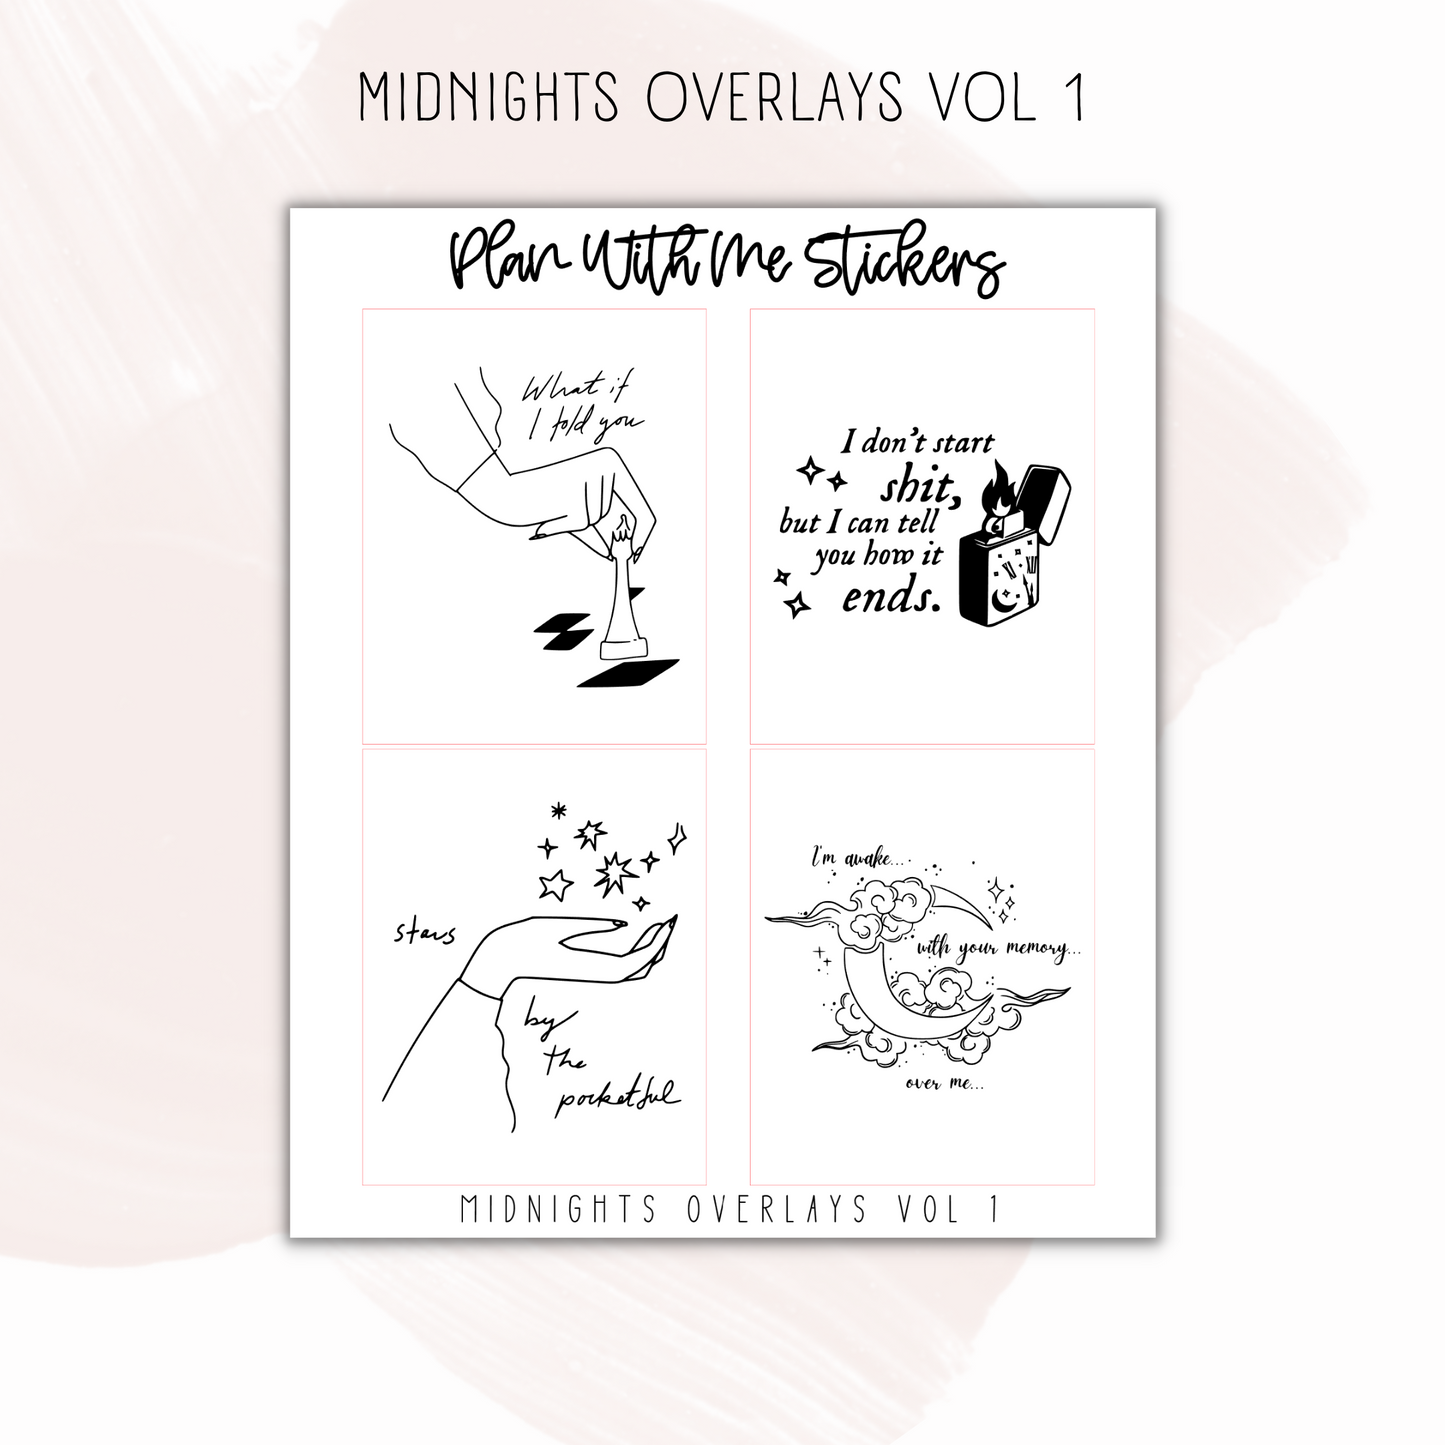 Midnights Overlays Vol 1